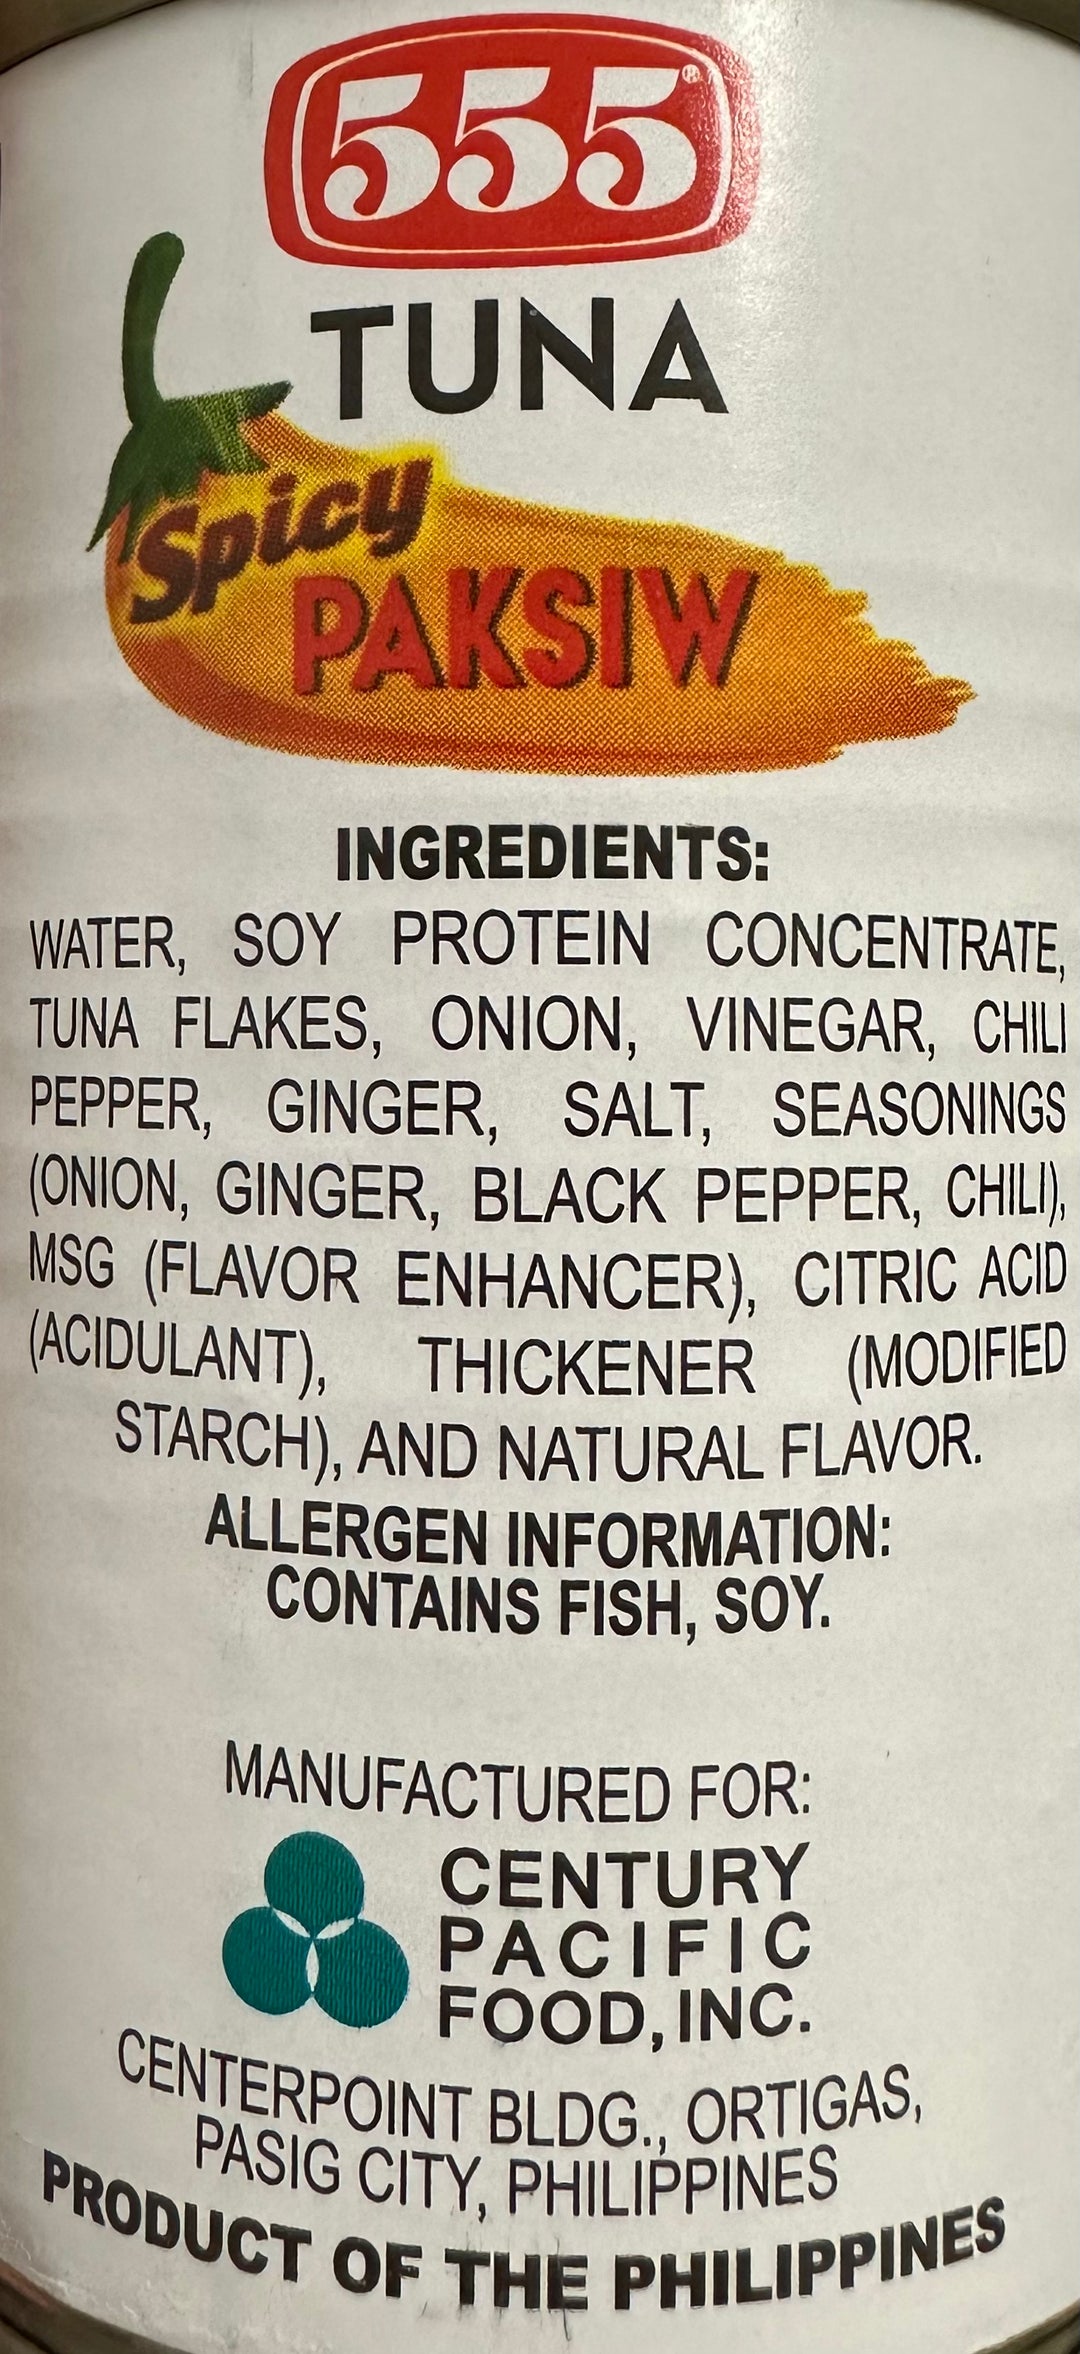 555 Tuna - Spicy Paksiw 5.5 OZ